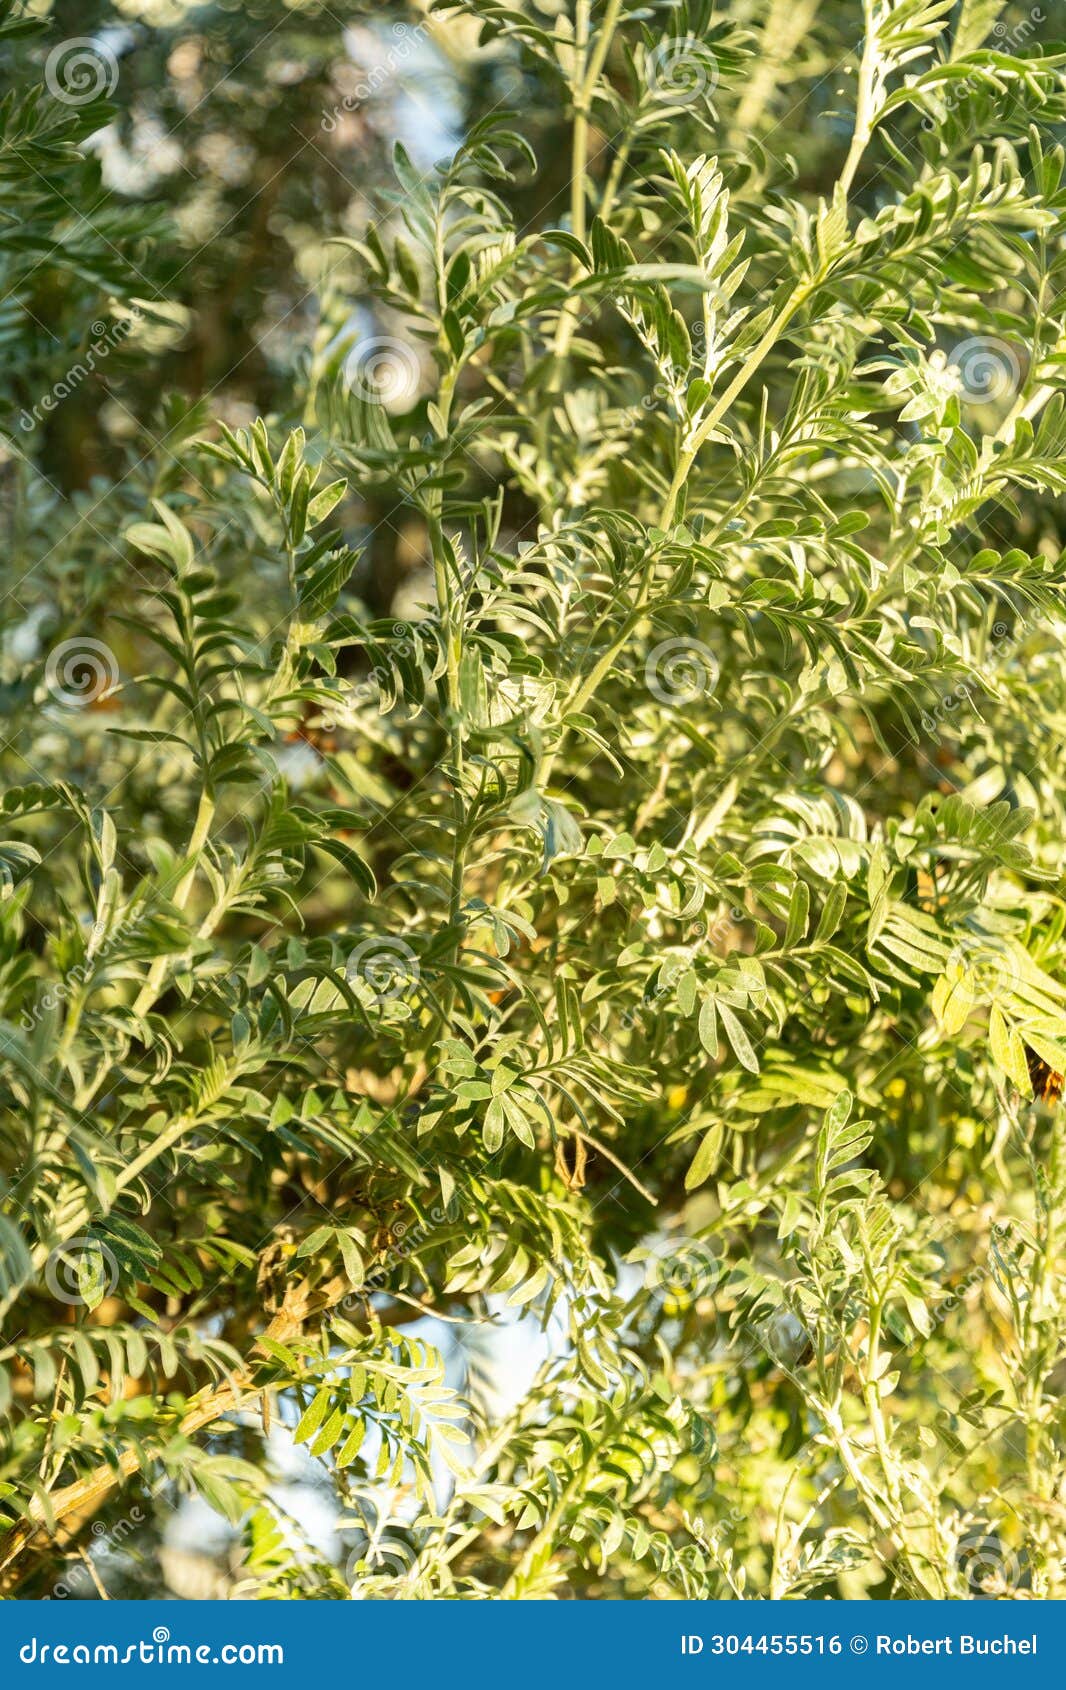 anthyllis barba-jovis plant in saint gallen in switzerland